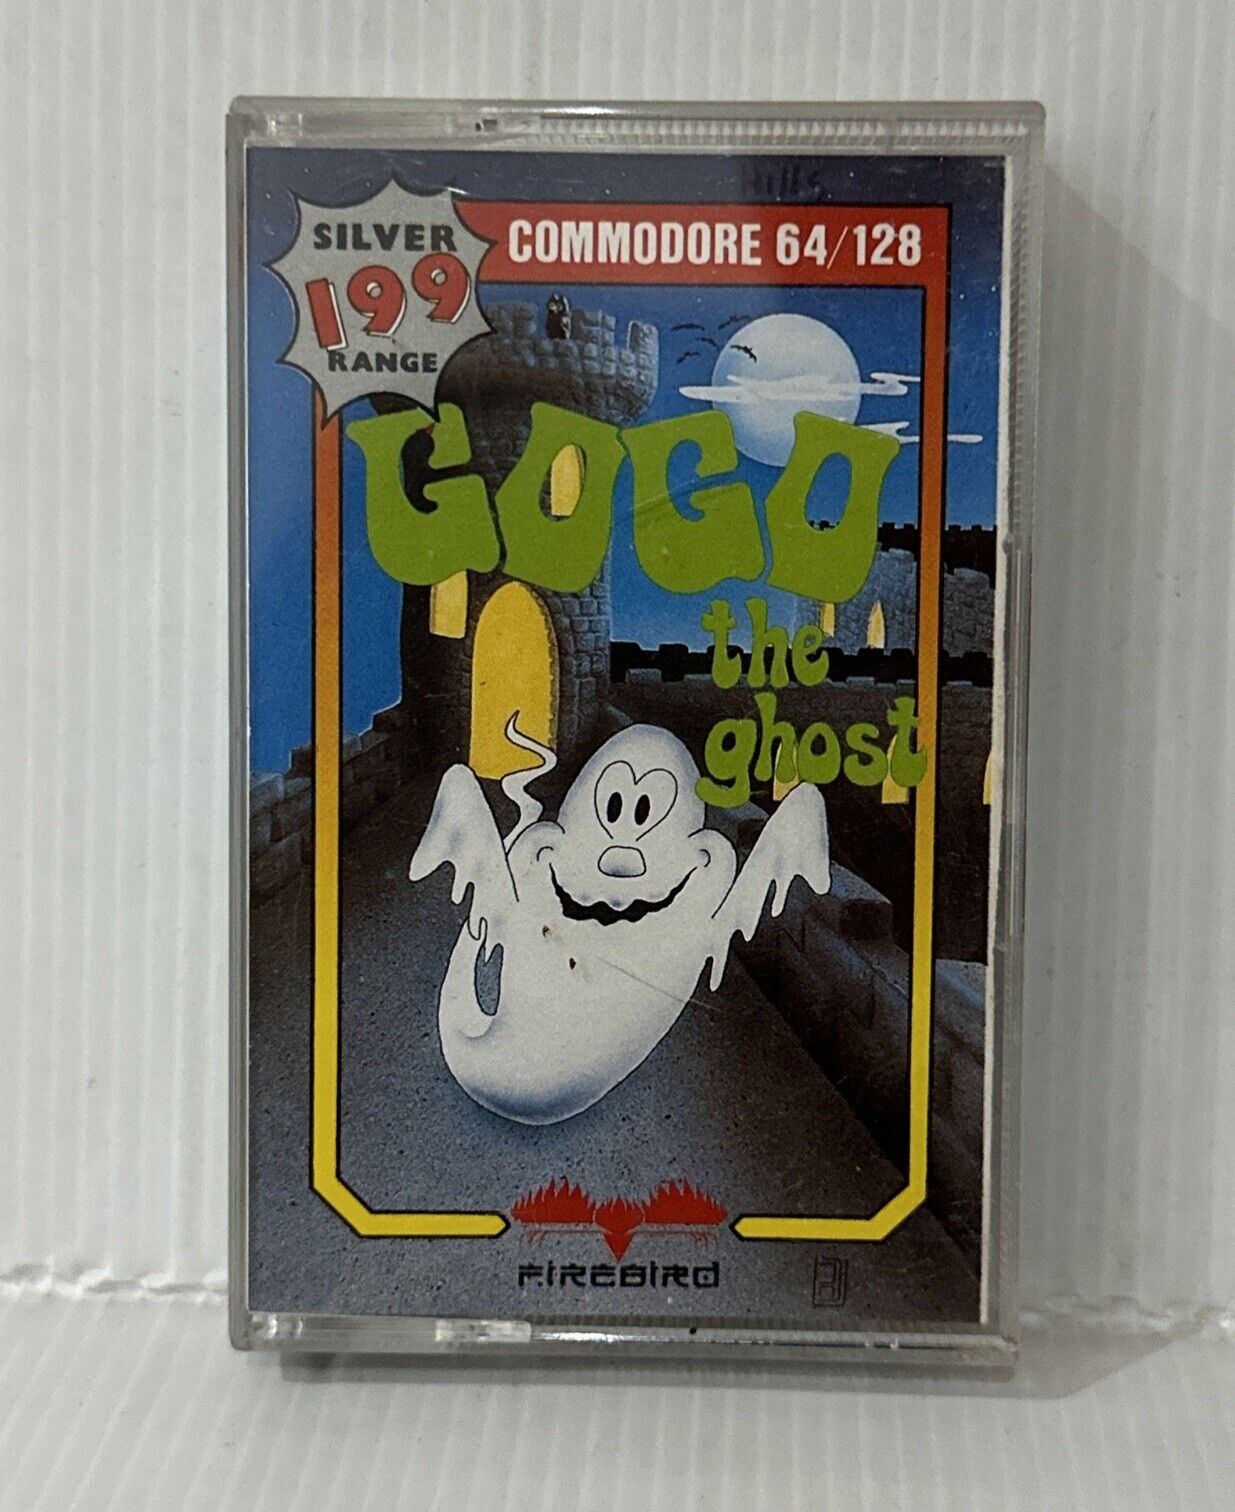 GOGO The Ghost COMMODORE 64/128 C64 Cassette Firebird Silver 199 Range